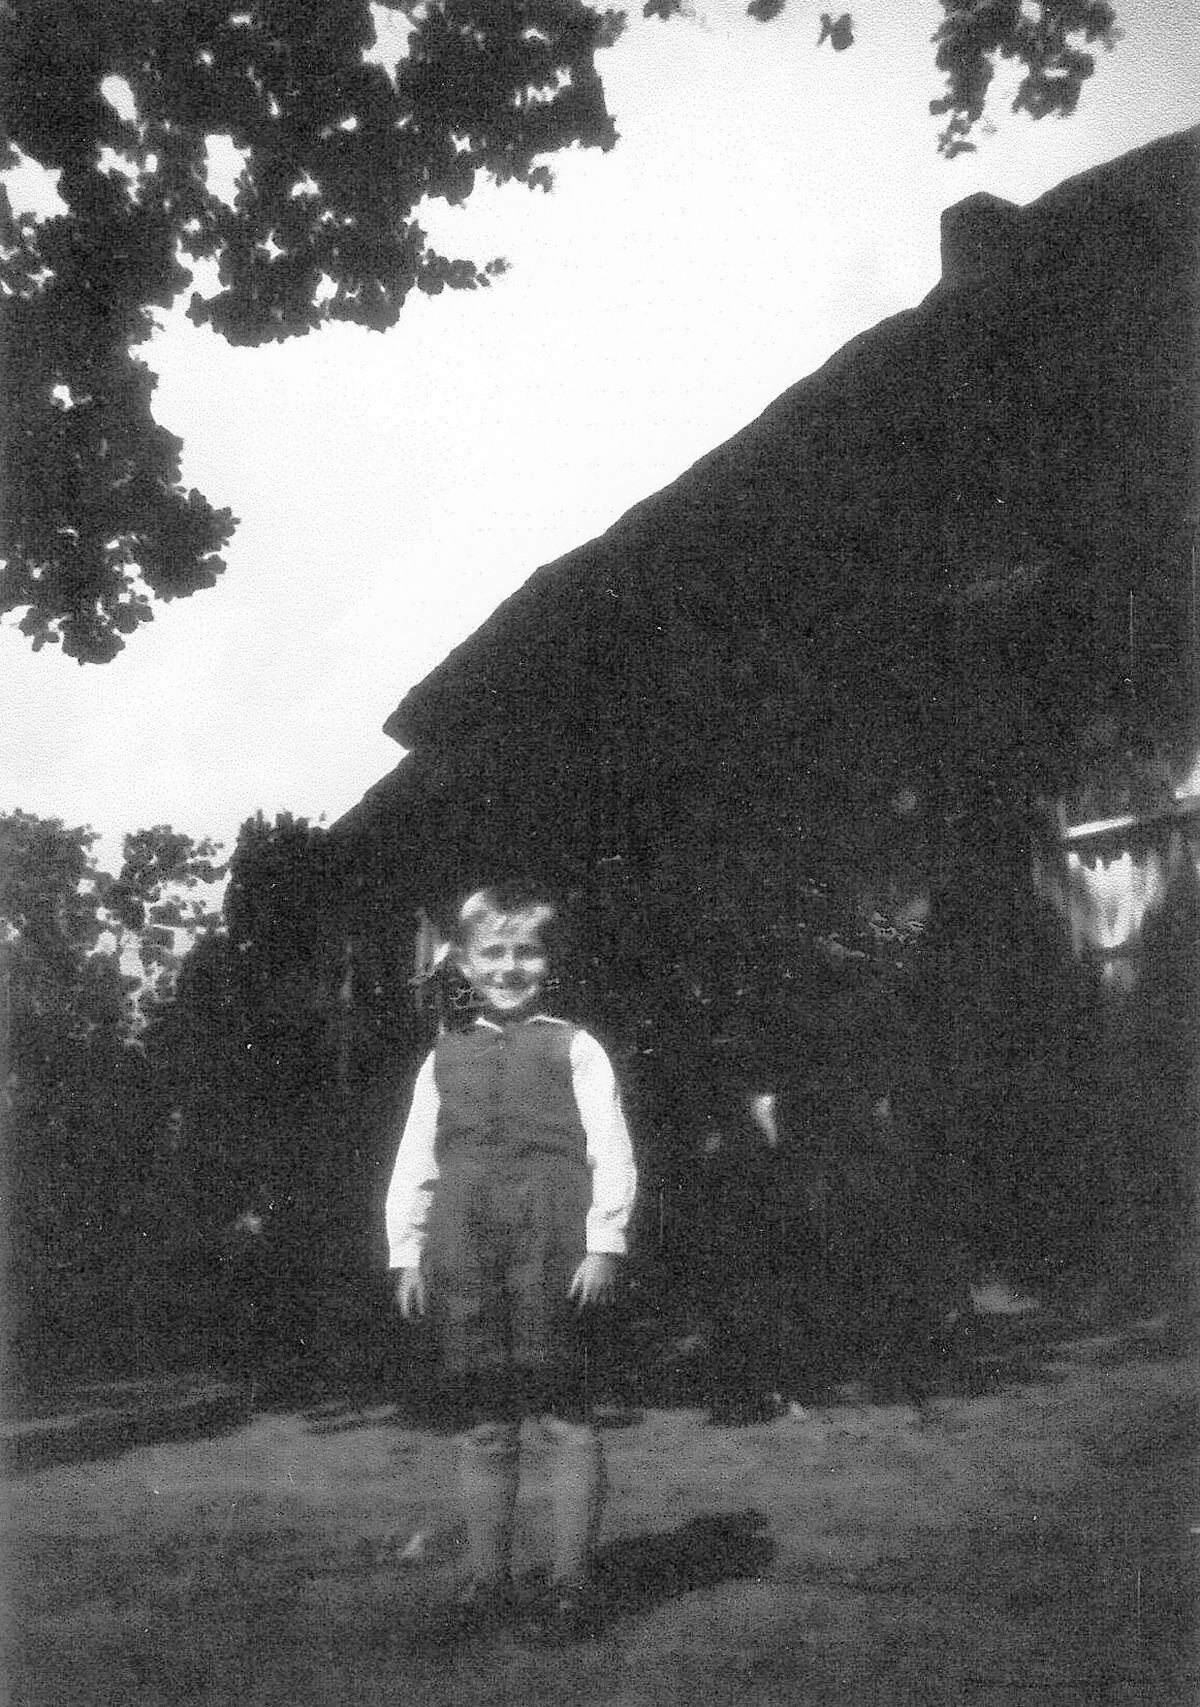 Ton VanDijk at the property in 1950.